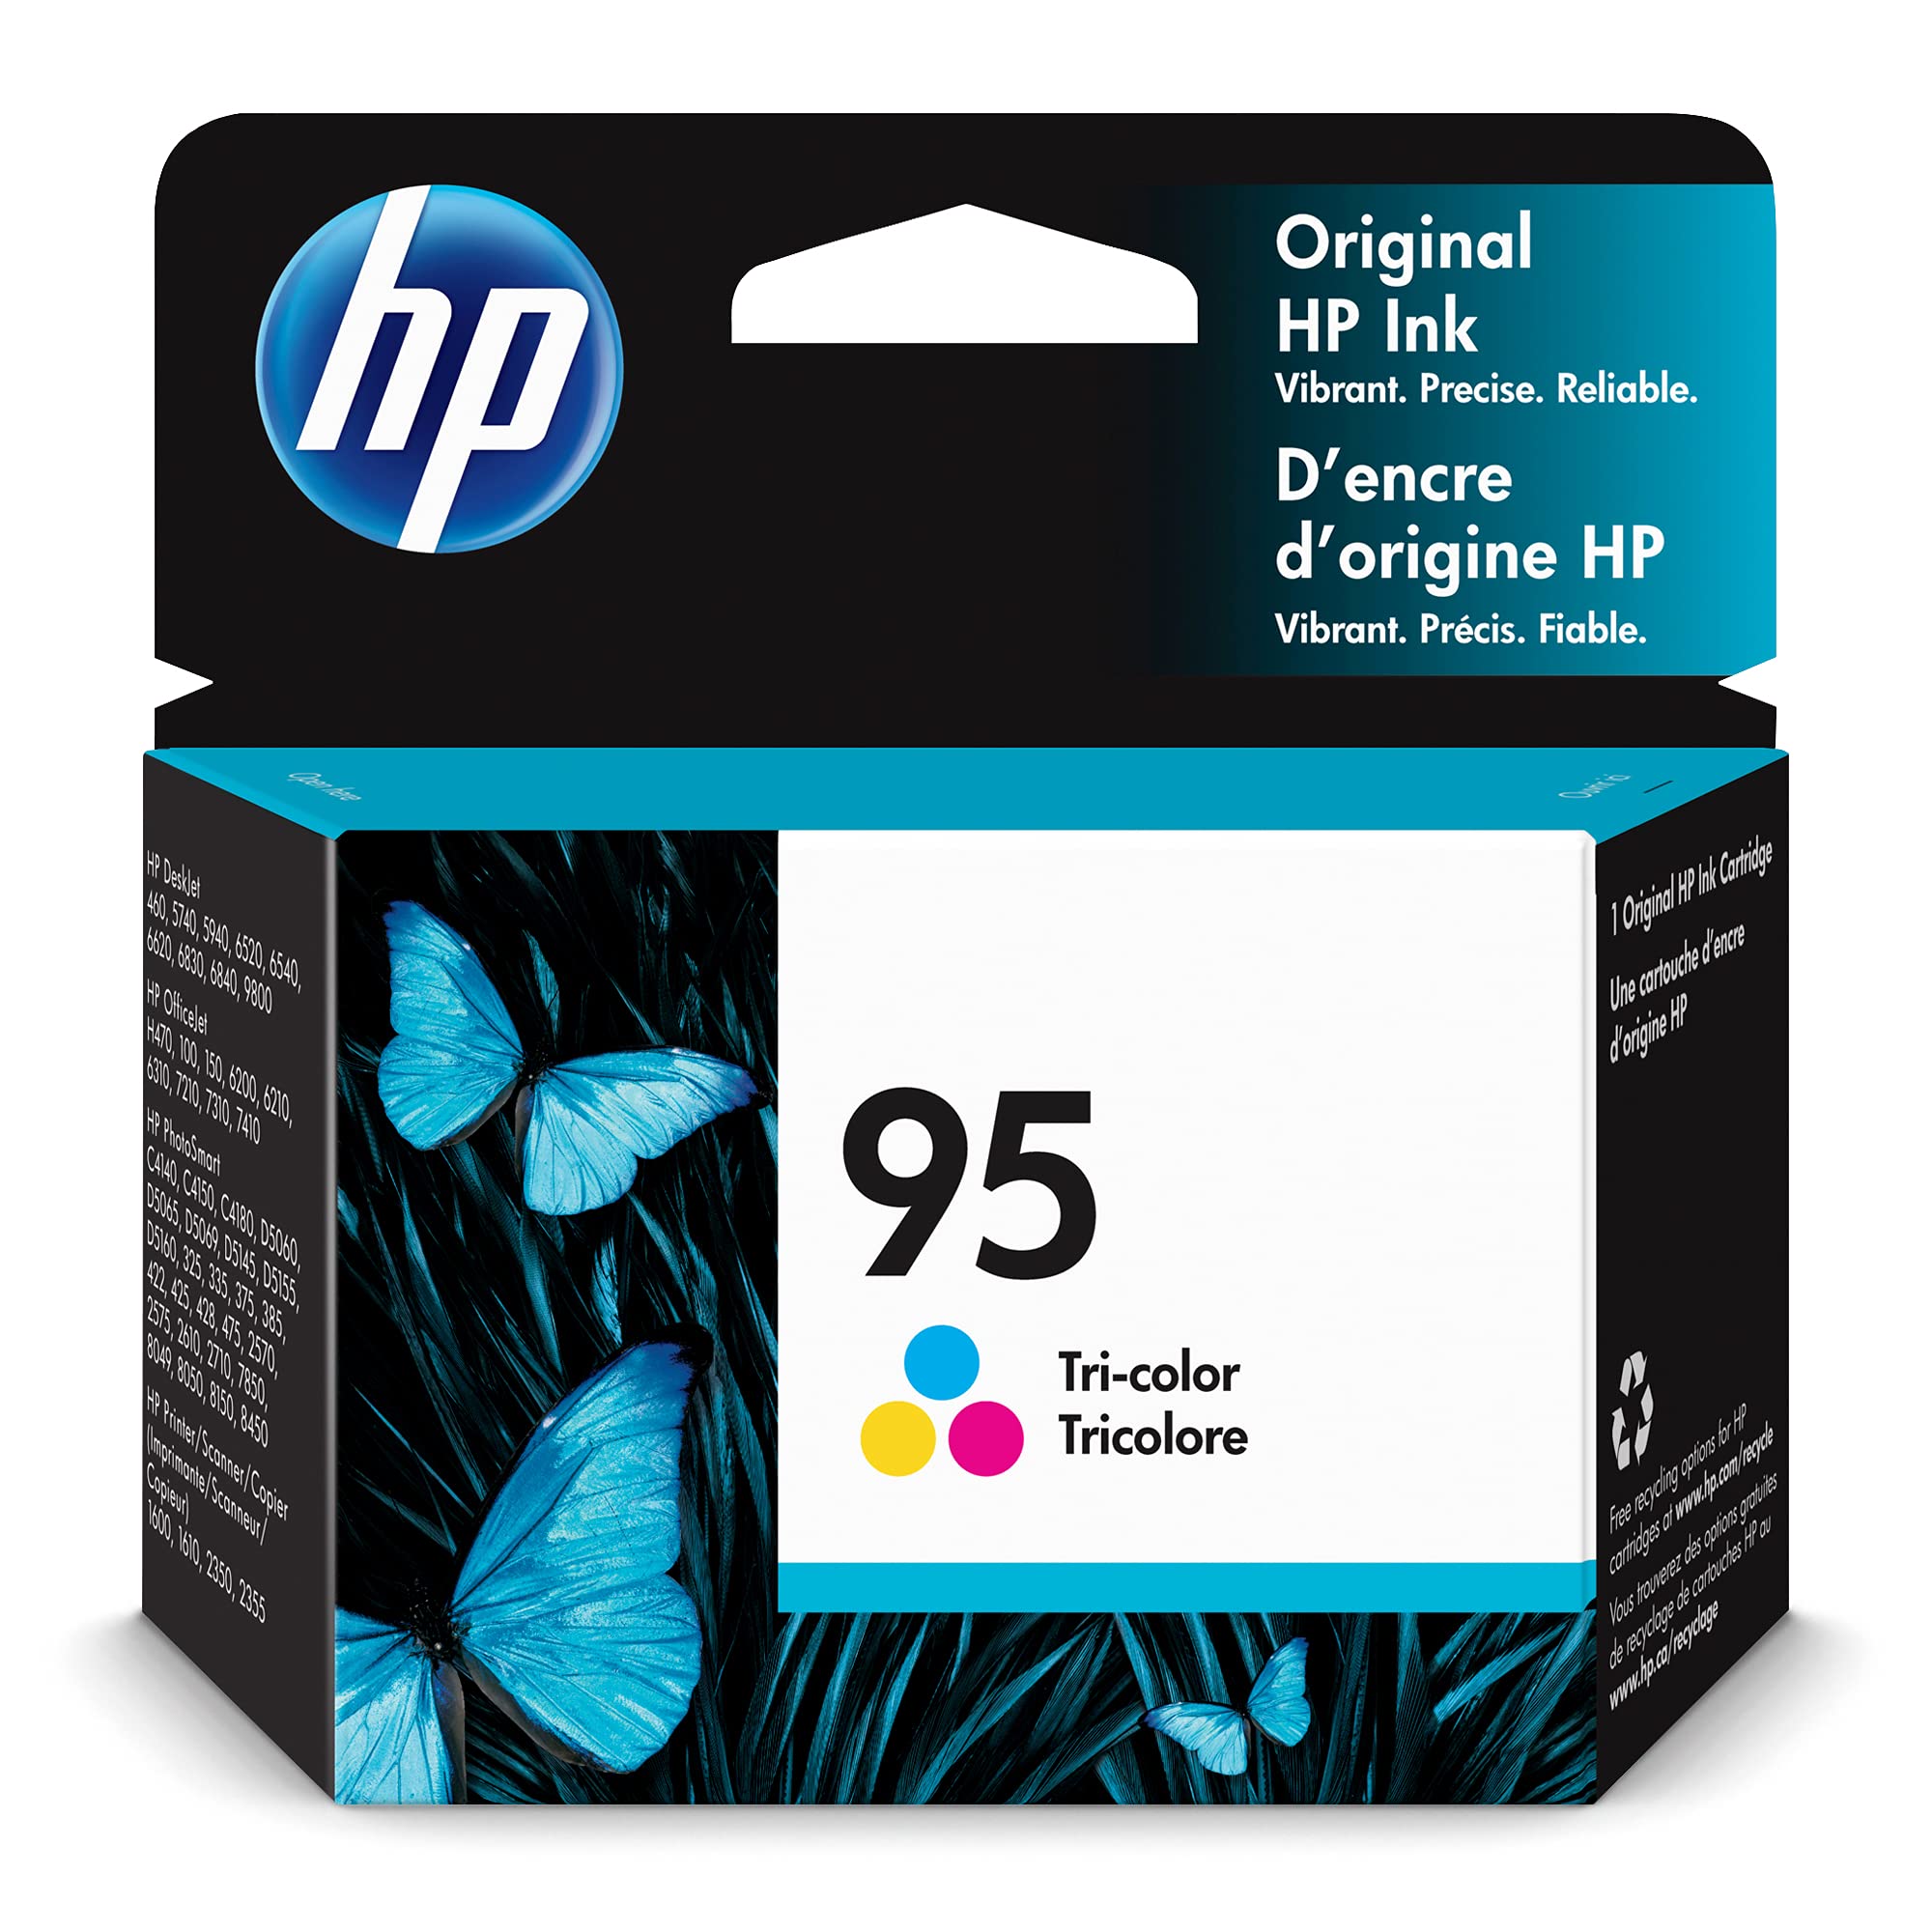 HP 95 Tri-color Ink | Works with HP DeskJet 460, 5000, 6000, 9800; OfficeJet H470, 100, 6000, 7000; PhotoSmart C4100, D5000, 300, 400, 2000, 7850, 8000; PSC 1600, 2350 Series | C8766WN